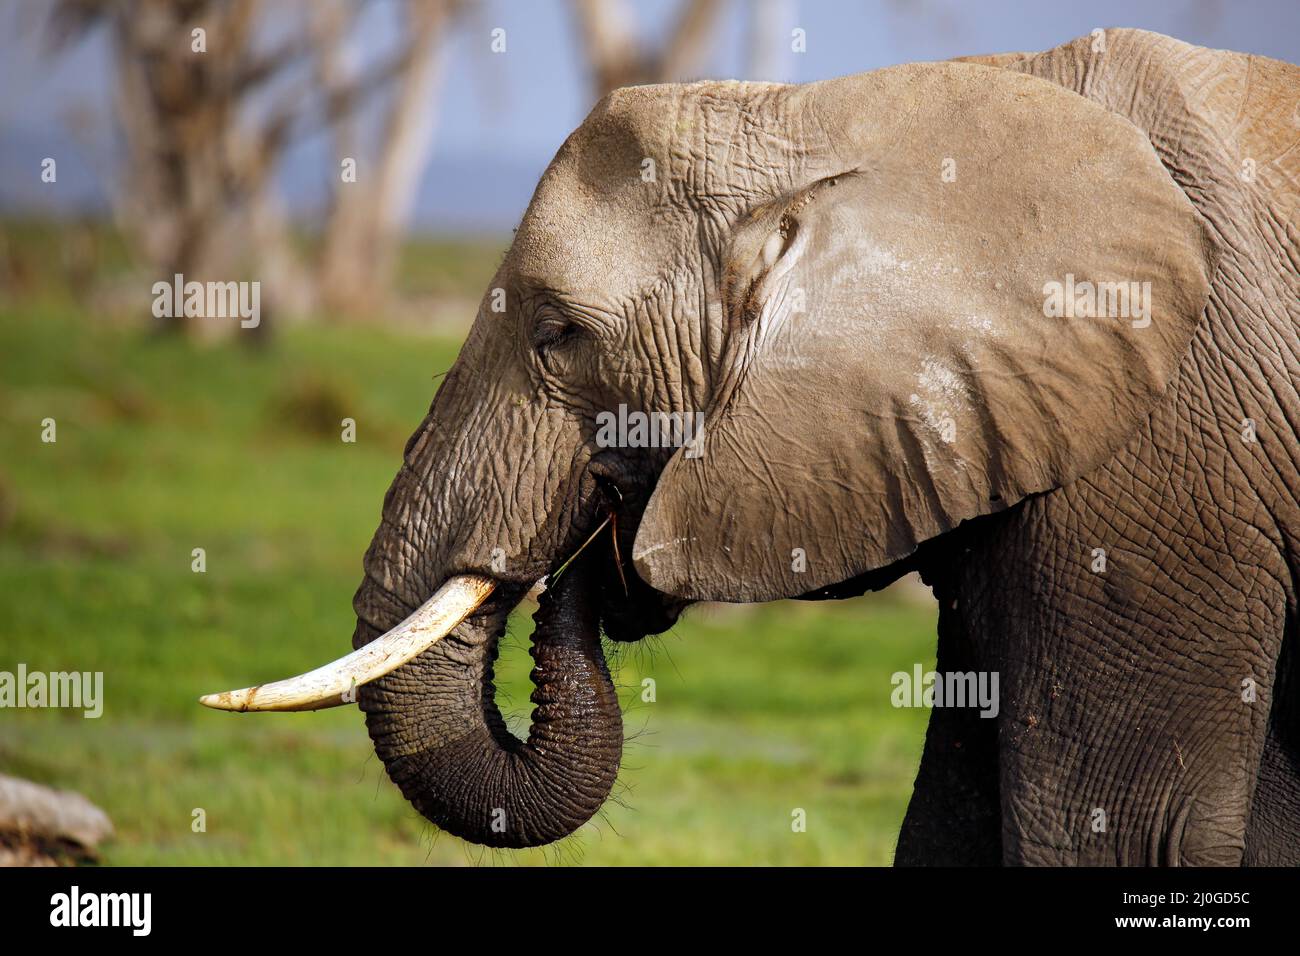 African Elephant (Loxodonta africana) in Profile, Feeding. Amboseli, Kenya Stock Photo